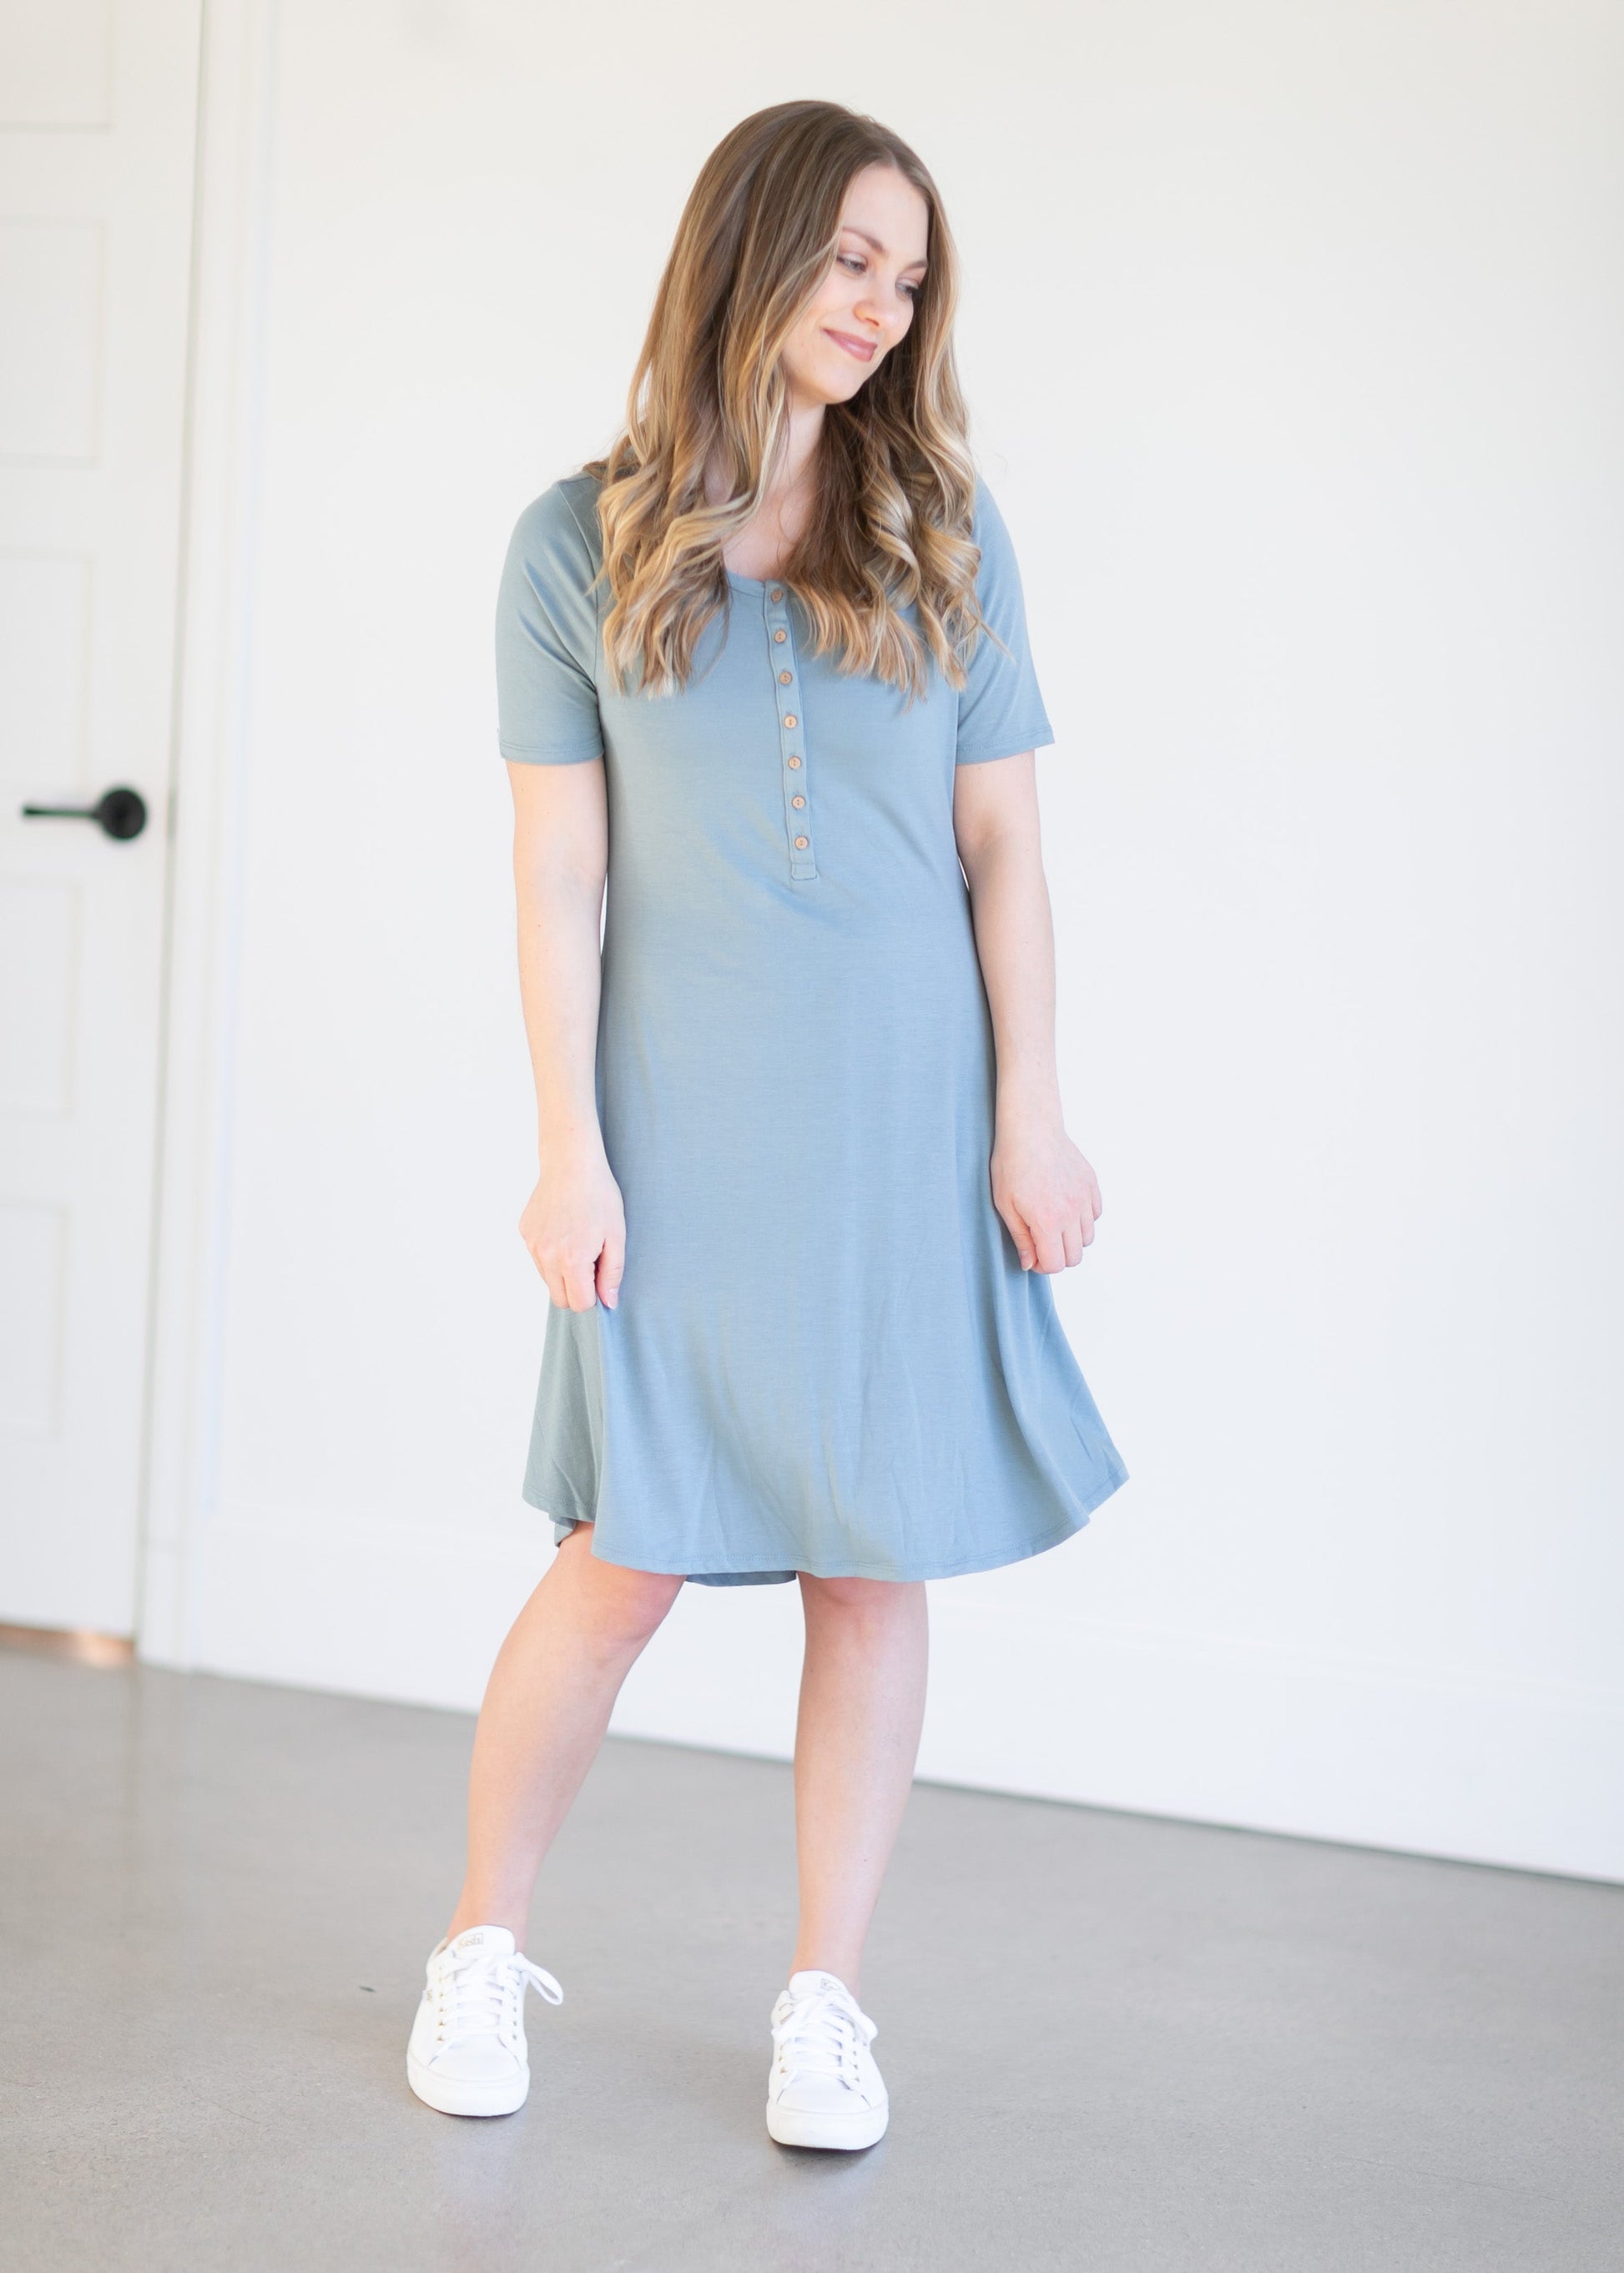 Henley Button Short Sleeve Knit Dress Dresses Blue / S